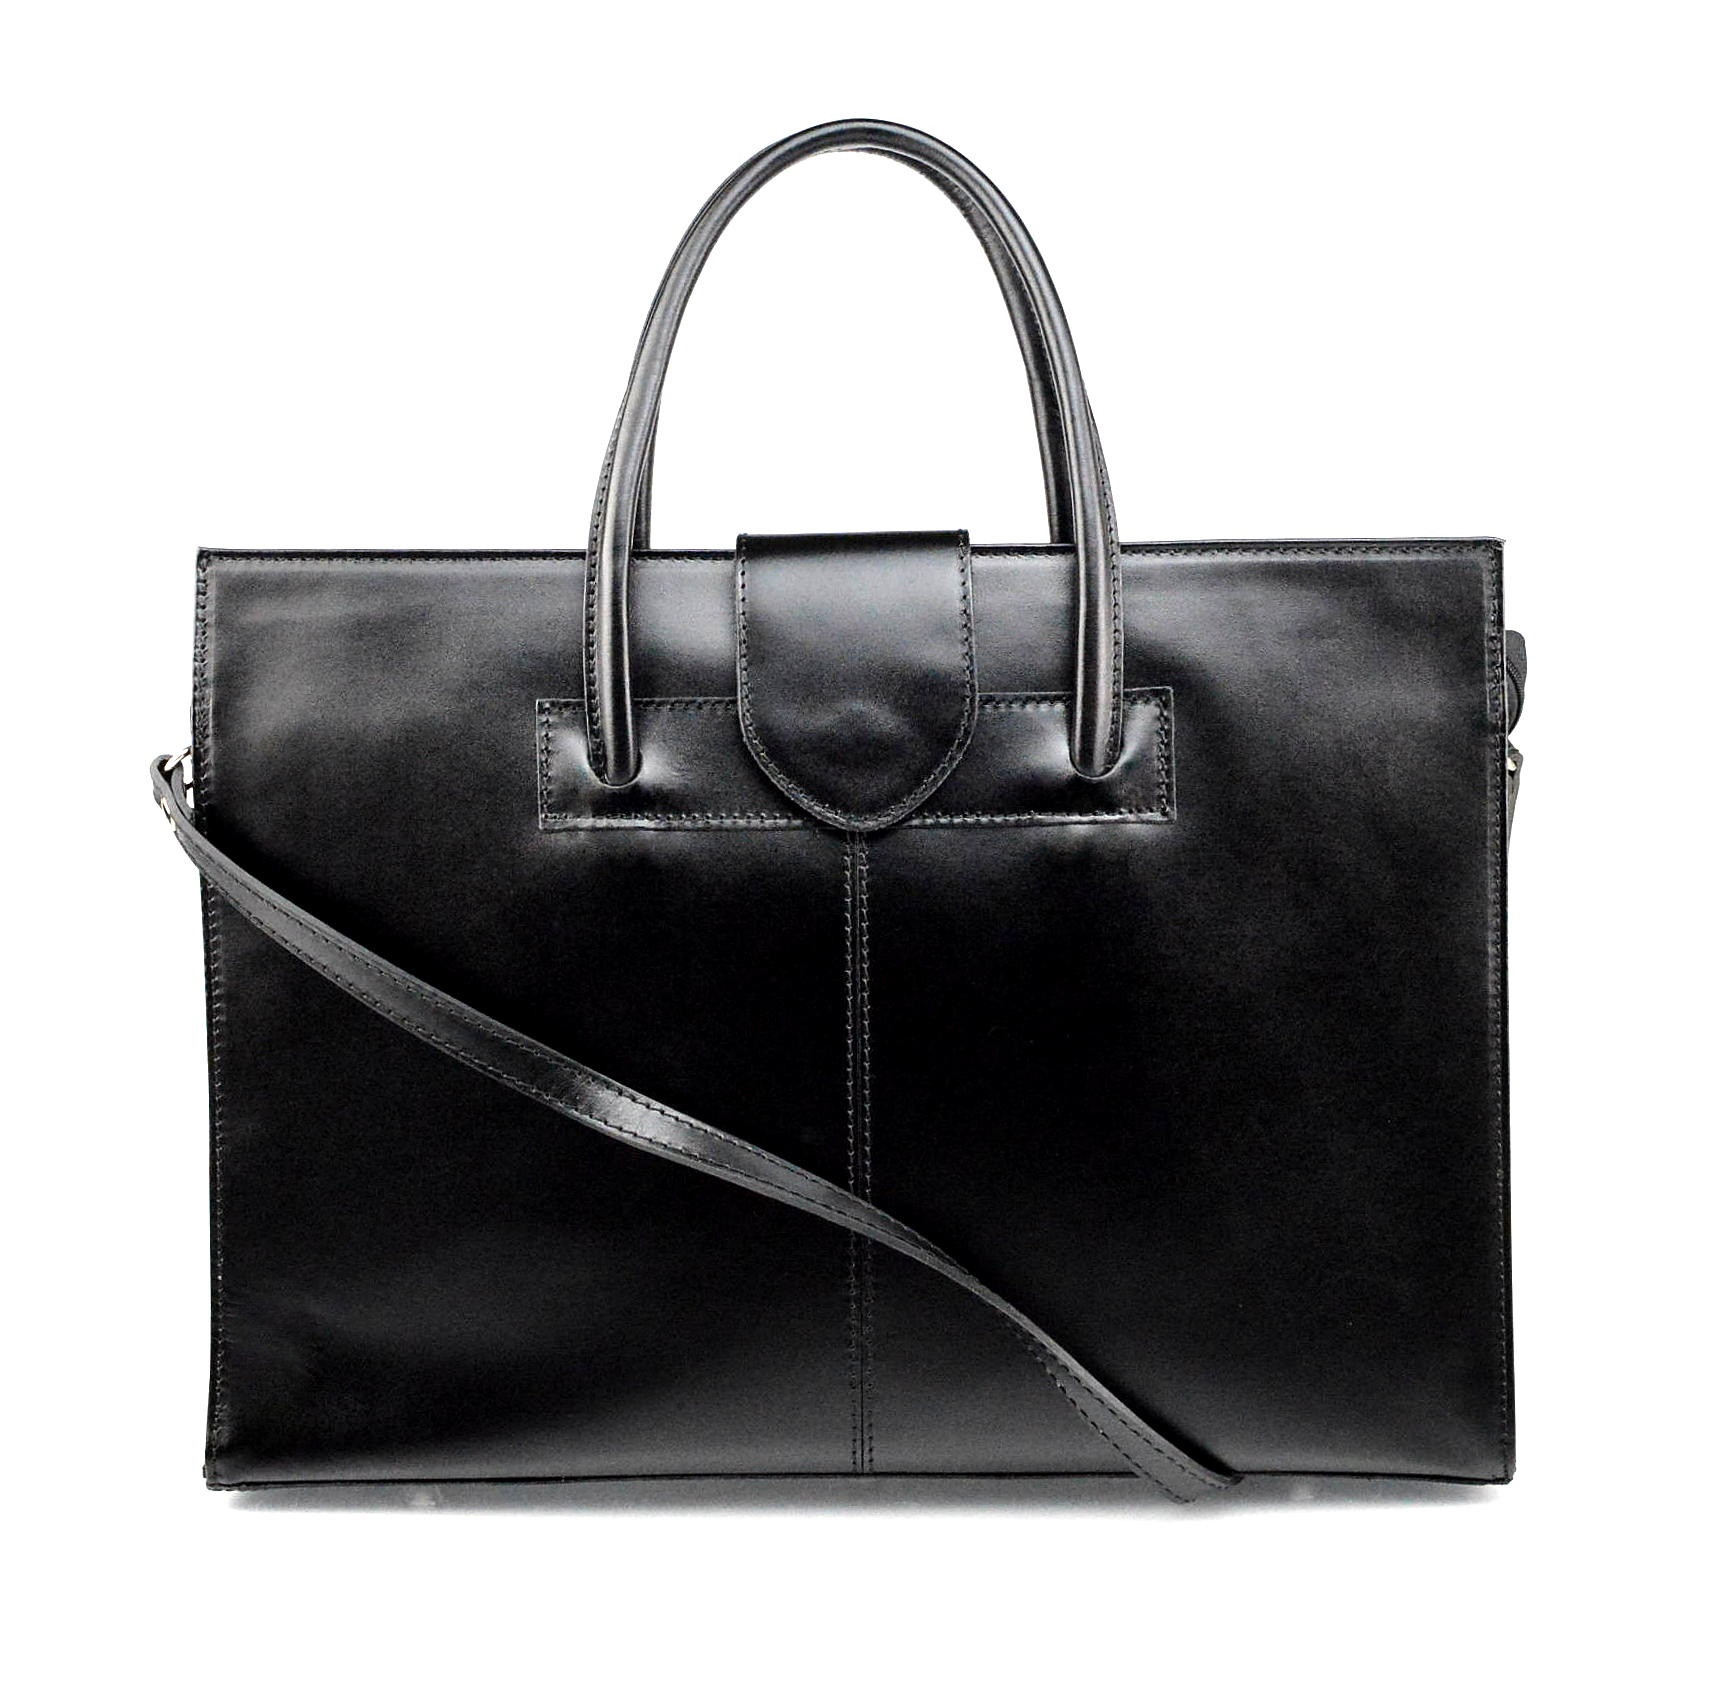 Prostorná jedinečná černá kožená kabelka do ruky Business Two